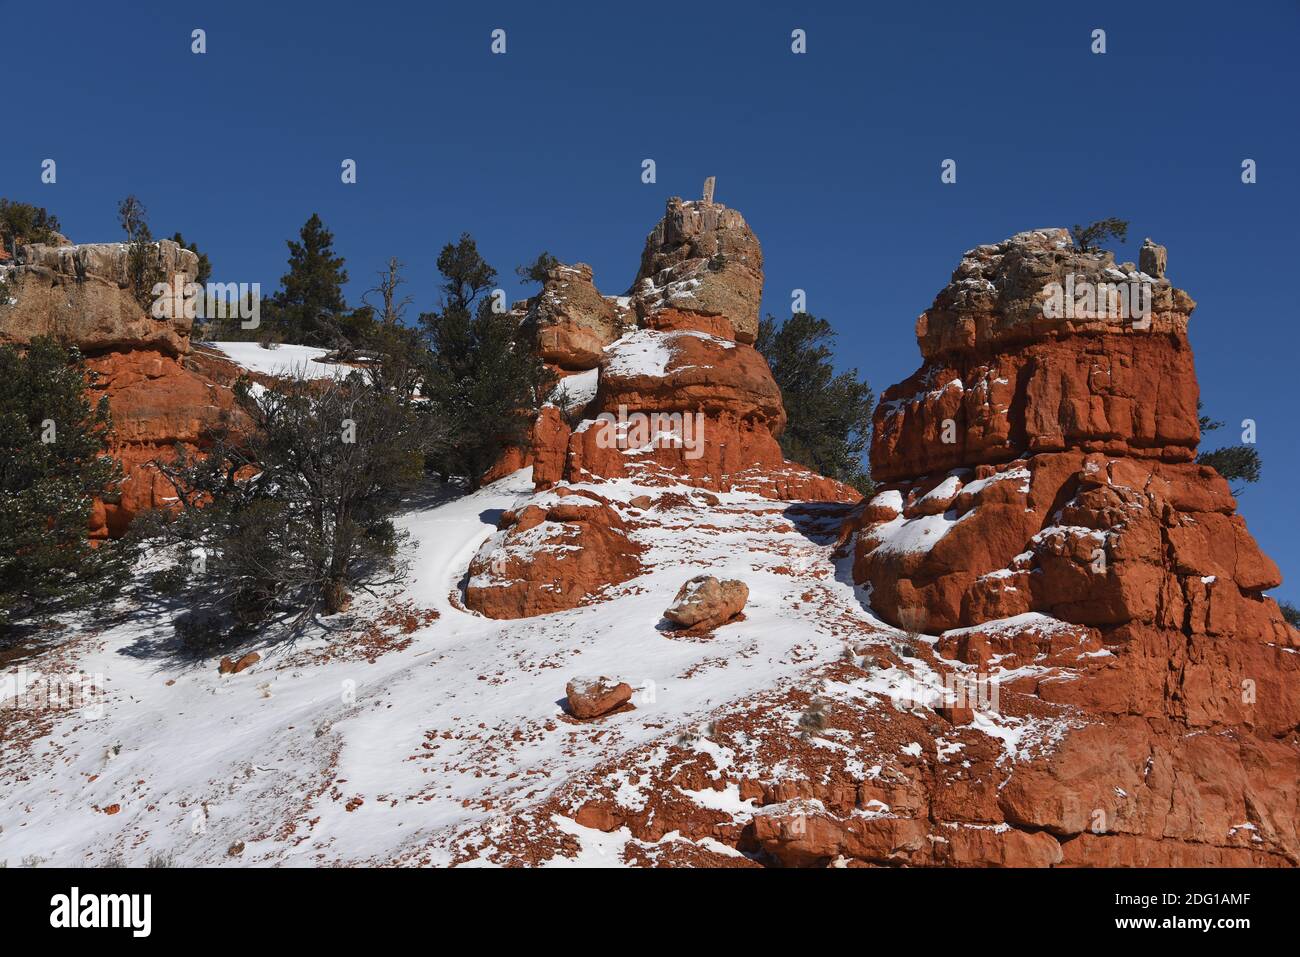 Une superbe image plein format colorée des formations rocheuses rouges de hoodoo et des conifères verts de Red Rock Canyon, Utah, couverts de neige. Banque D'Images